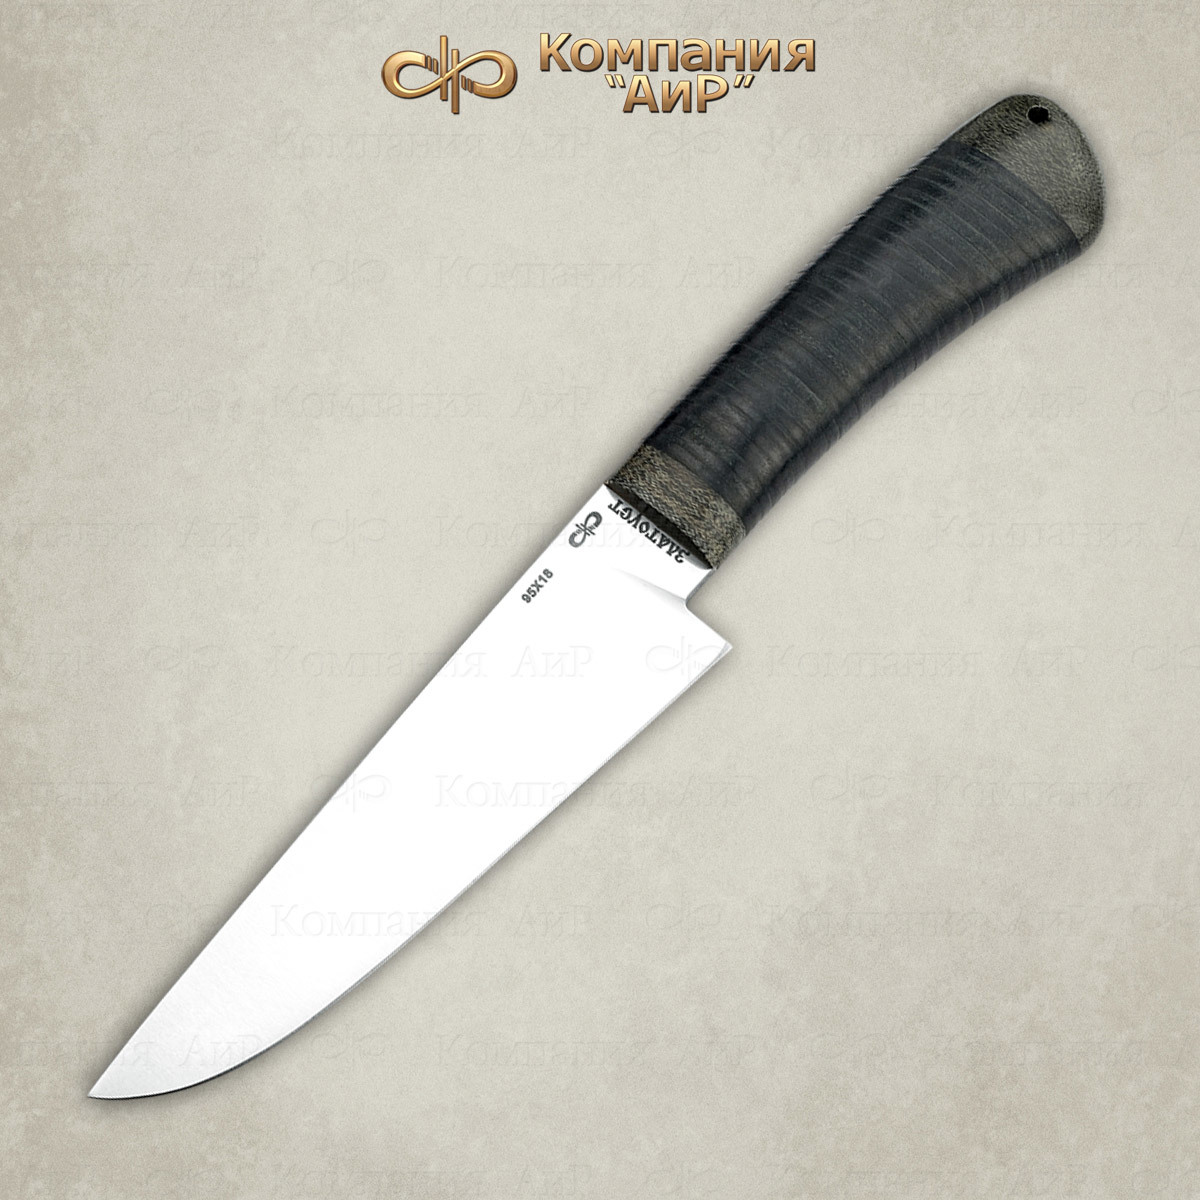 Нож Барибал 100х13м, кожа, АиР от Ножиков